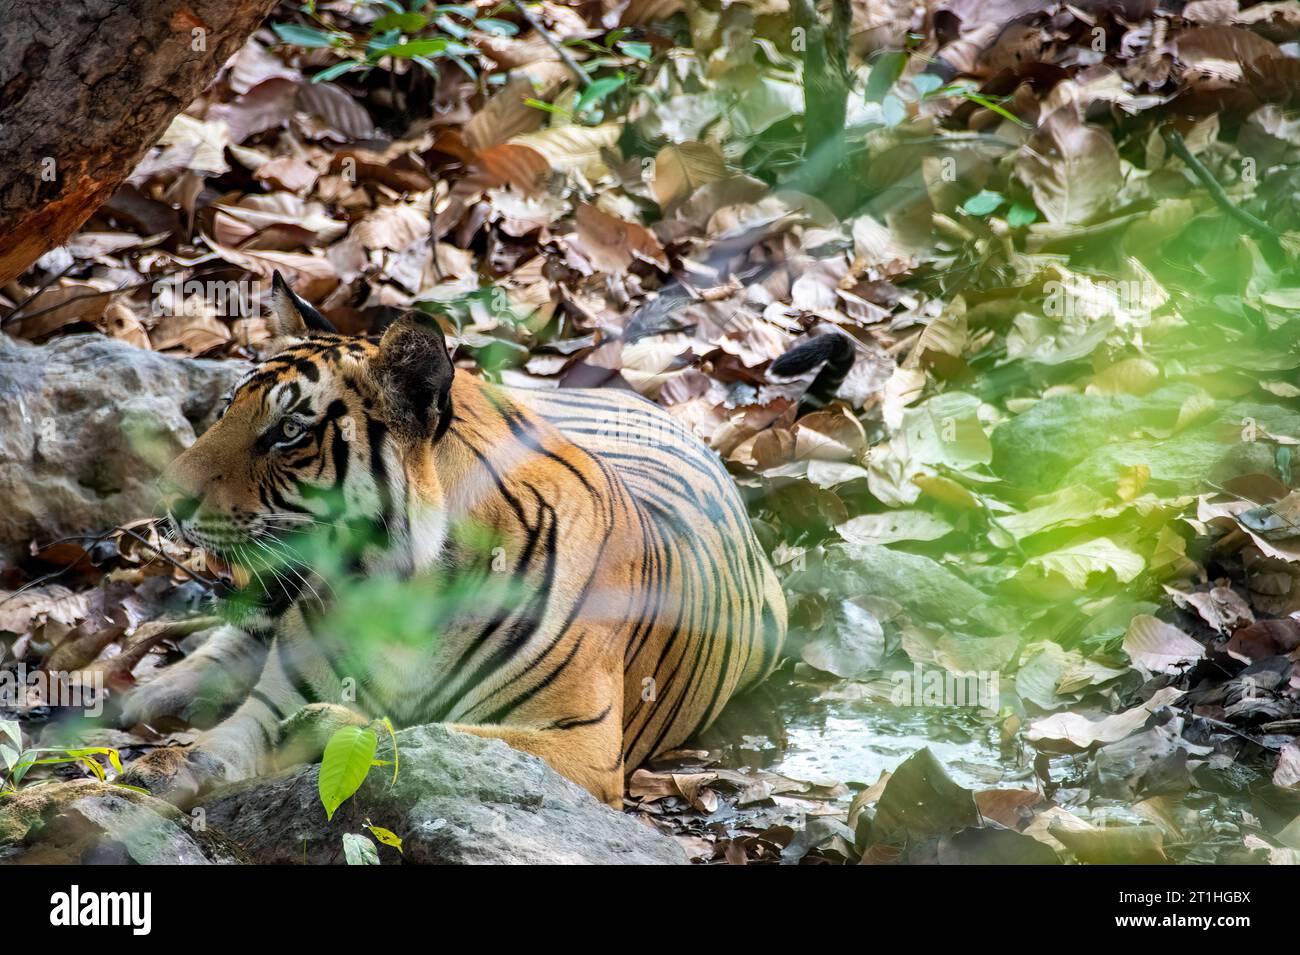 Un tigre subadulte se détendant à l'ombre de l'arbre lors d'un chaud après-midi d'été à l'intérieur de Bandhavgarh Tiger Reserve pendant le safari Banque D'Images